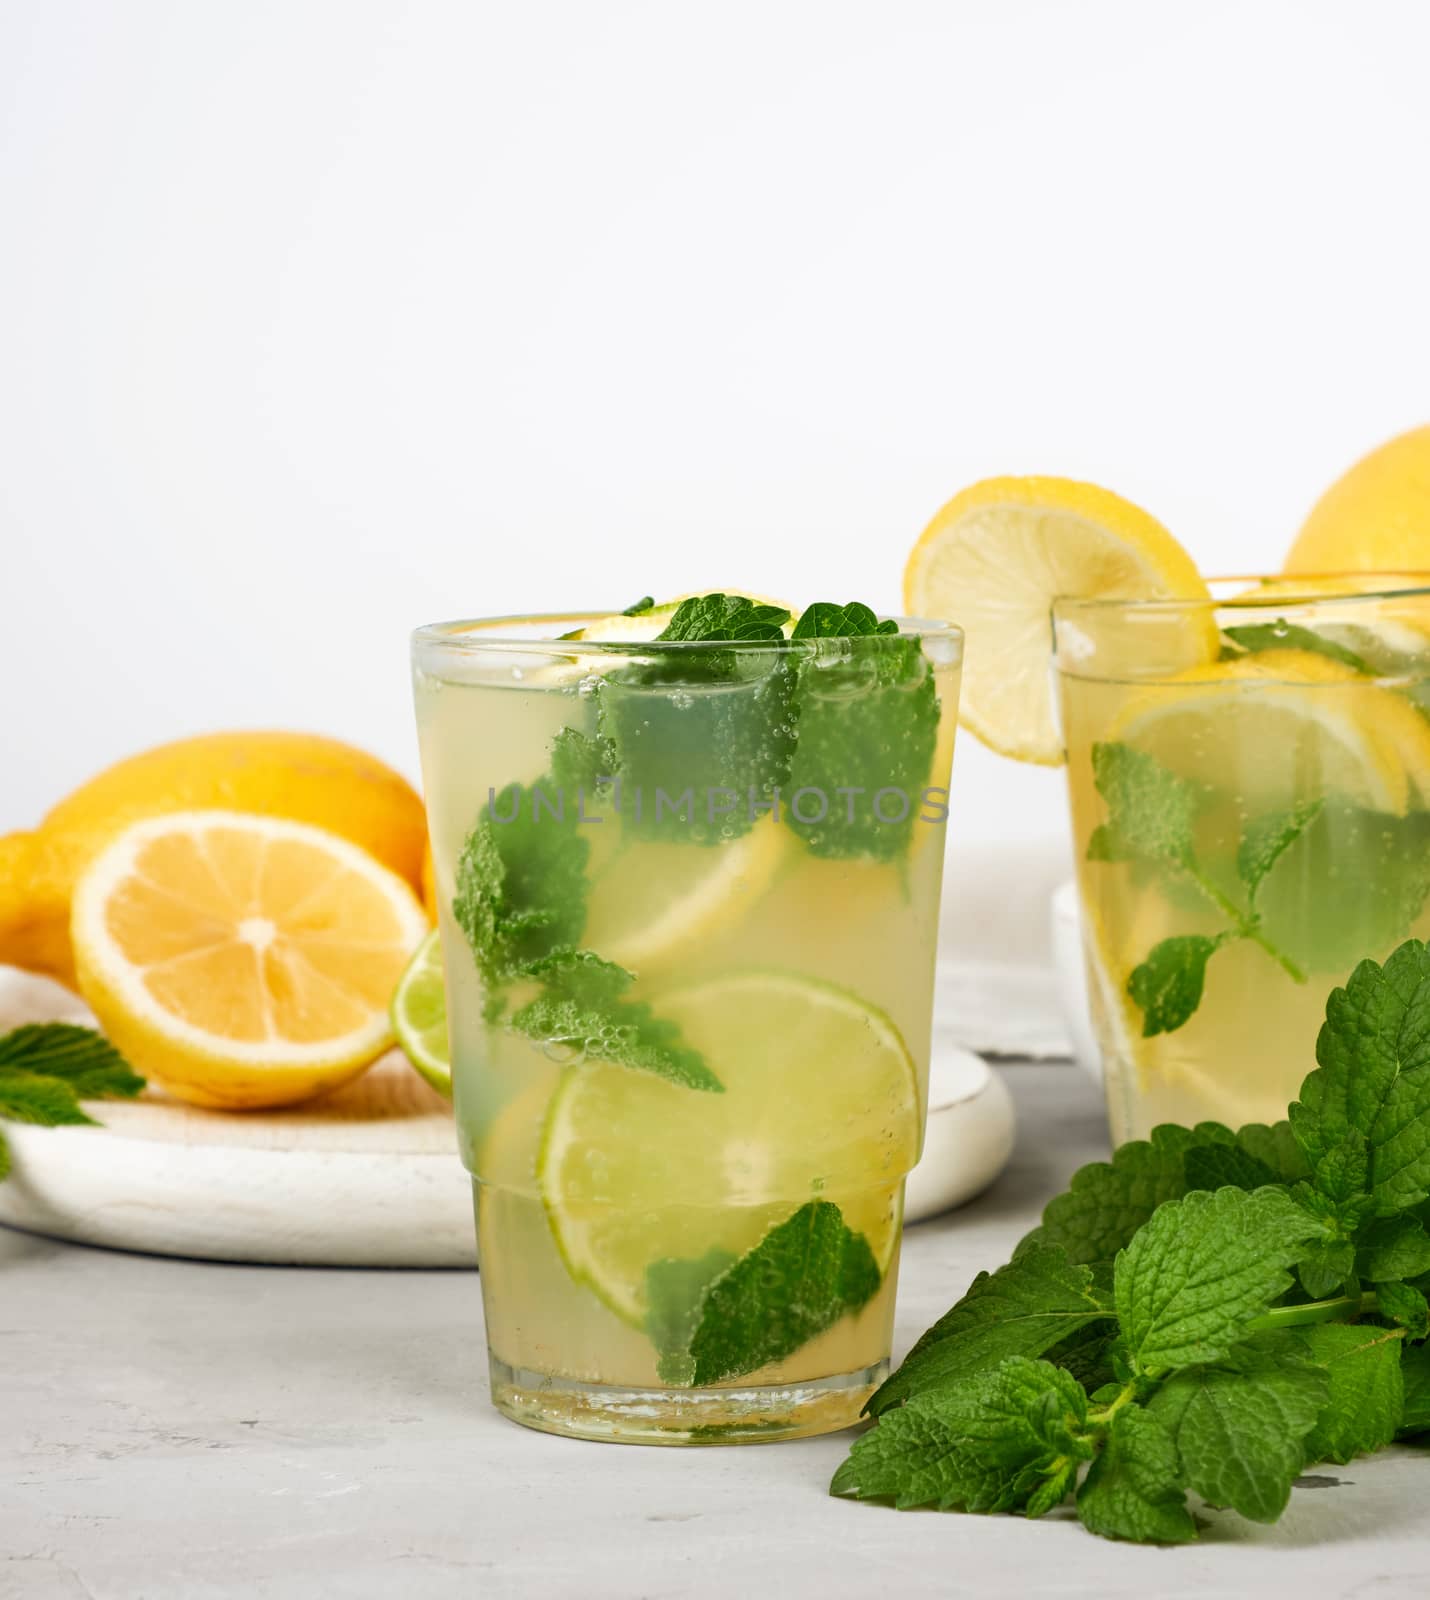 summer refreshing drink lemonade with lemons, mint leaves, lime  by ndanko